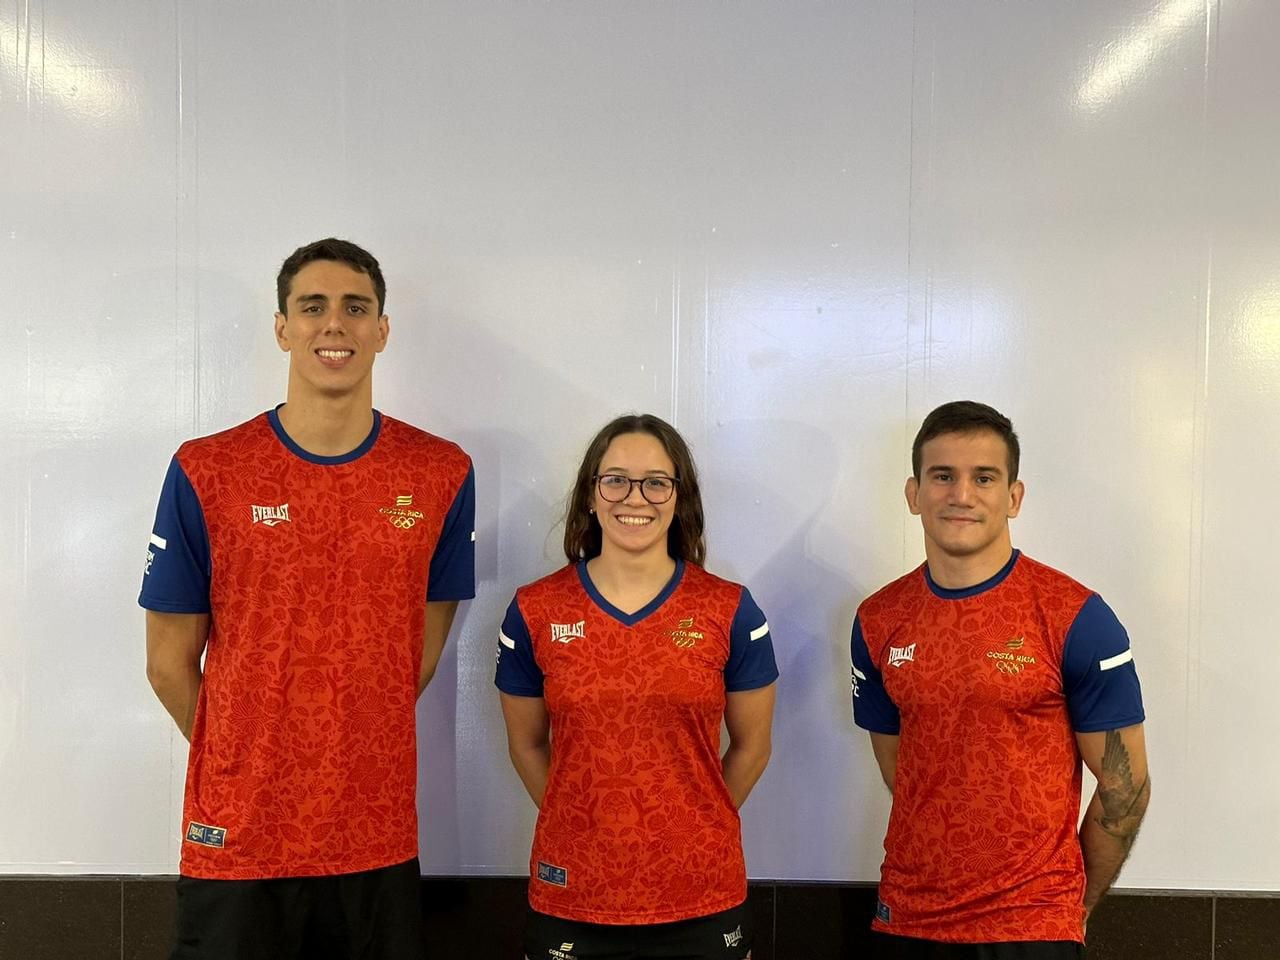 
Alberto Vega, Alondra Ortiz y Sebastián Sancho representarán a Costa Rica en los Juegos Olímpicos París 2024
Cortesía: Comité Olímpico